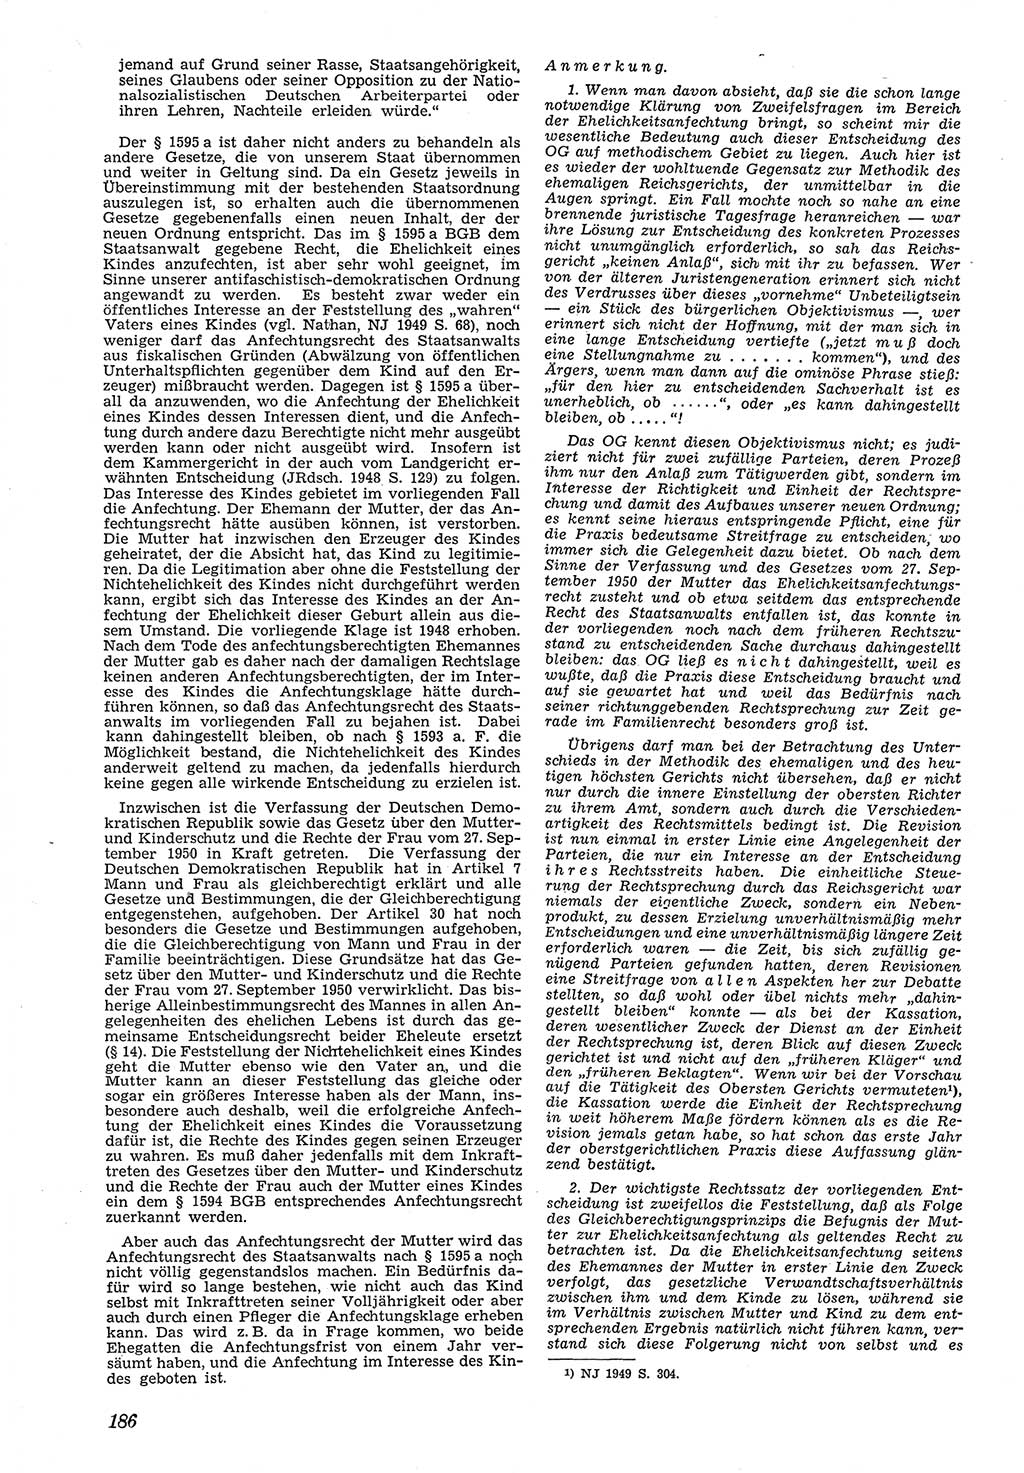 Neue Justiz (NJ), Zeitschrift für Recht und Rechtswissenschaft [Deutsche Demokratische Republik (DDR)], 5. Jahrgang 1951, Seite 186 (NJ DDR 1951, S. 186)